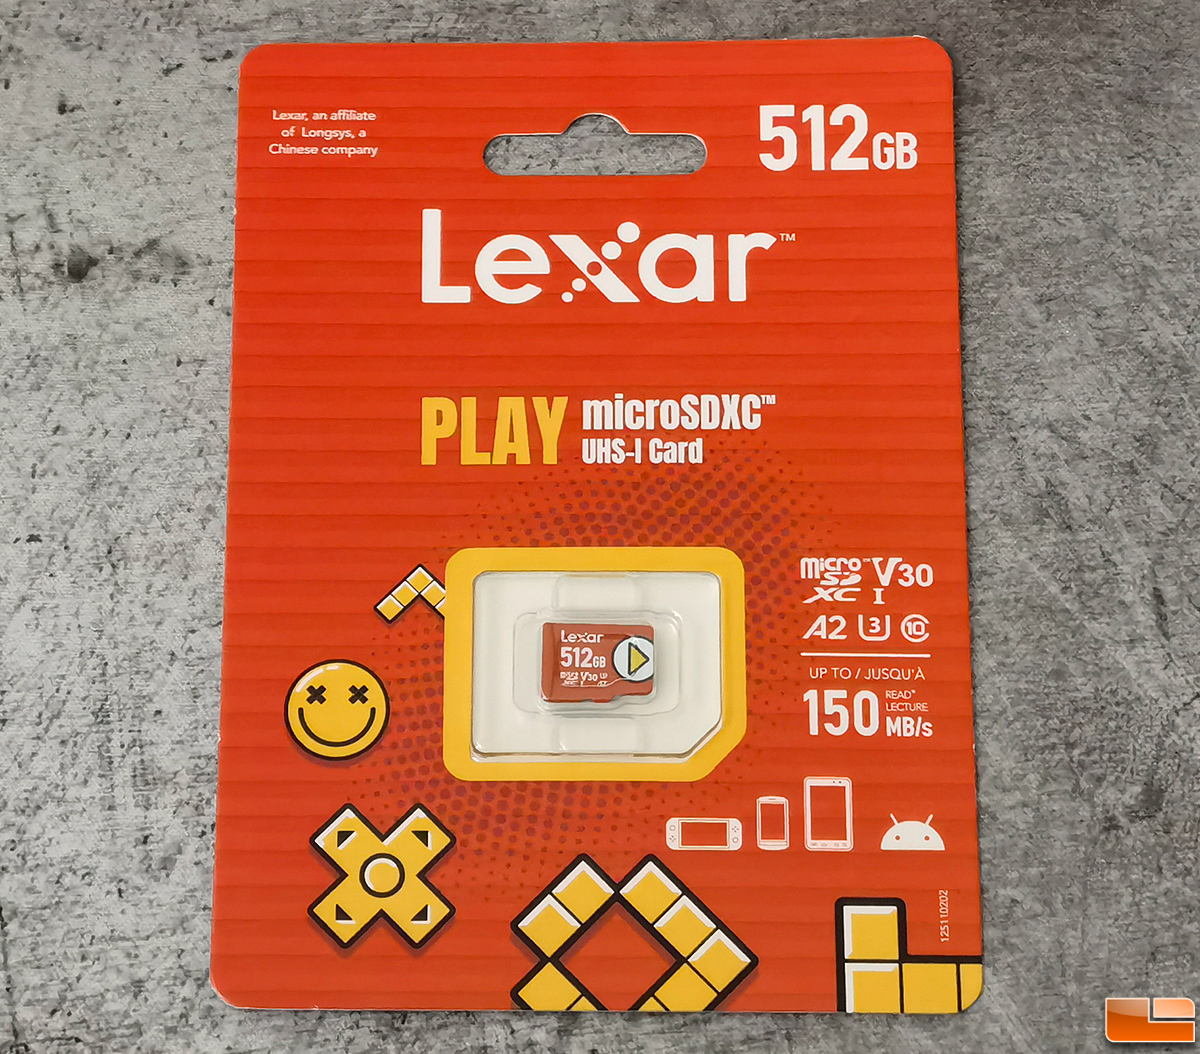 Vergemakkelijken verontschuldigen Maak een sneeuwpop Lexar PLAY microSDXC 512GB Memory Card Review - Legit Reviews